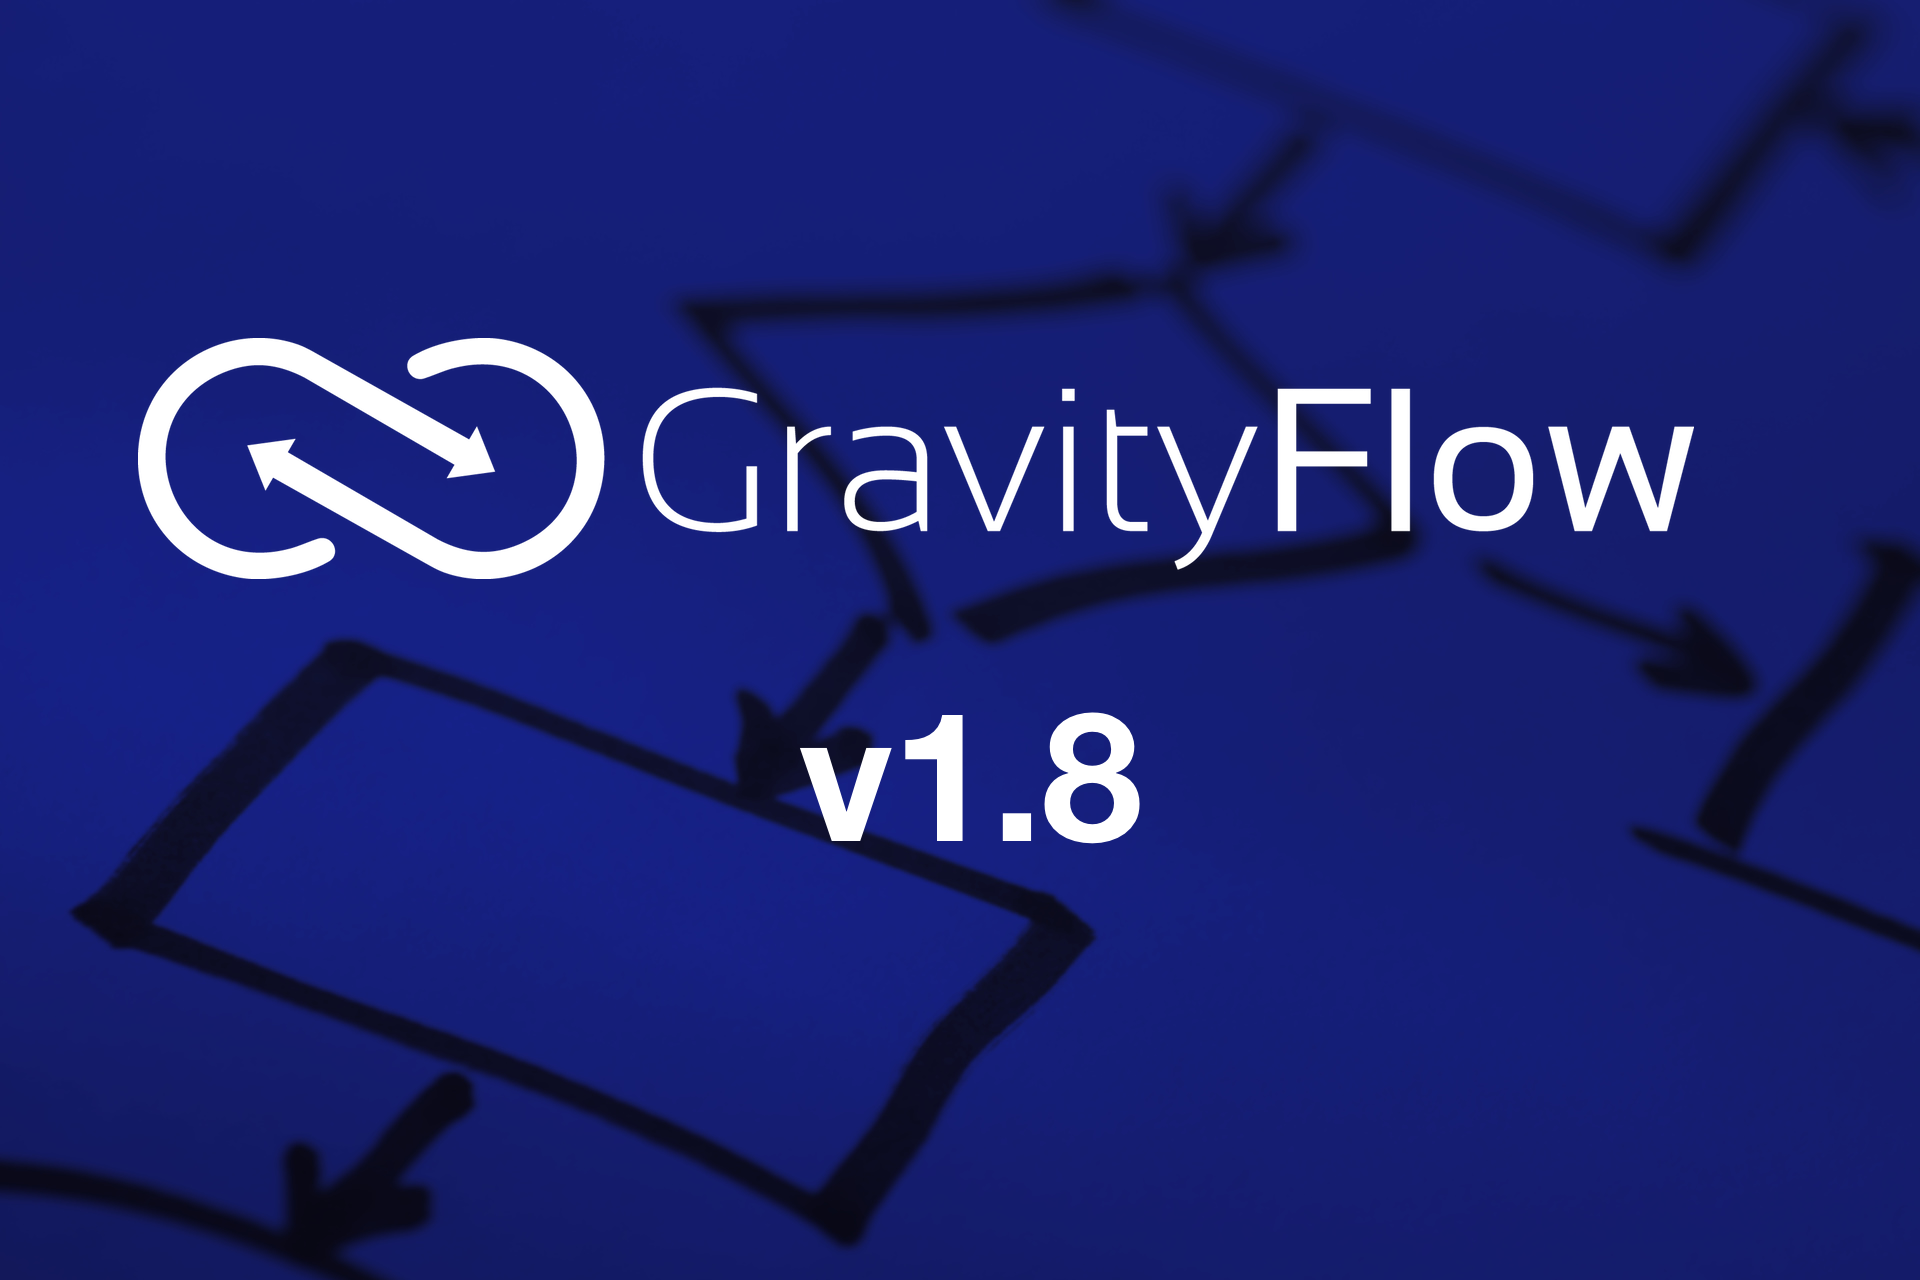 Gravity Flow v1.8 released